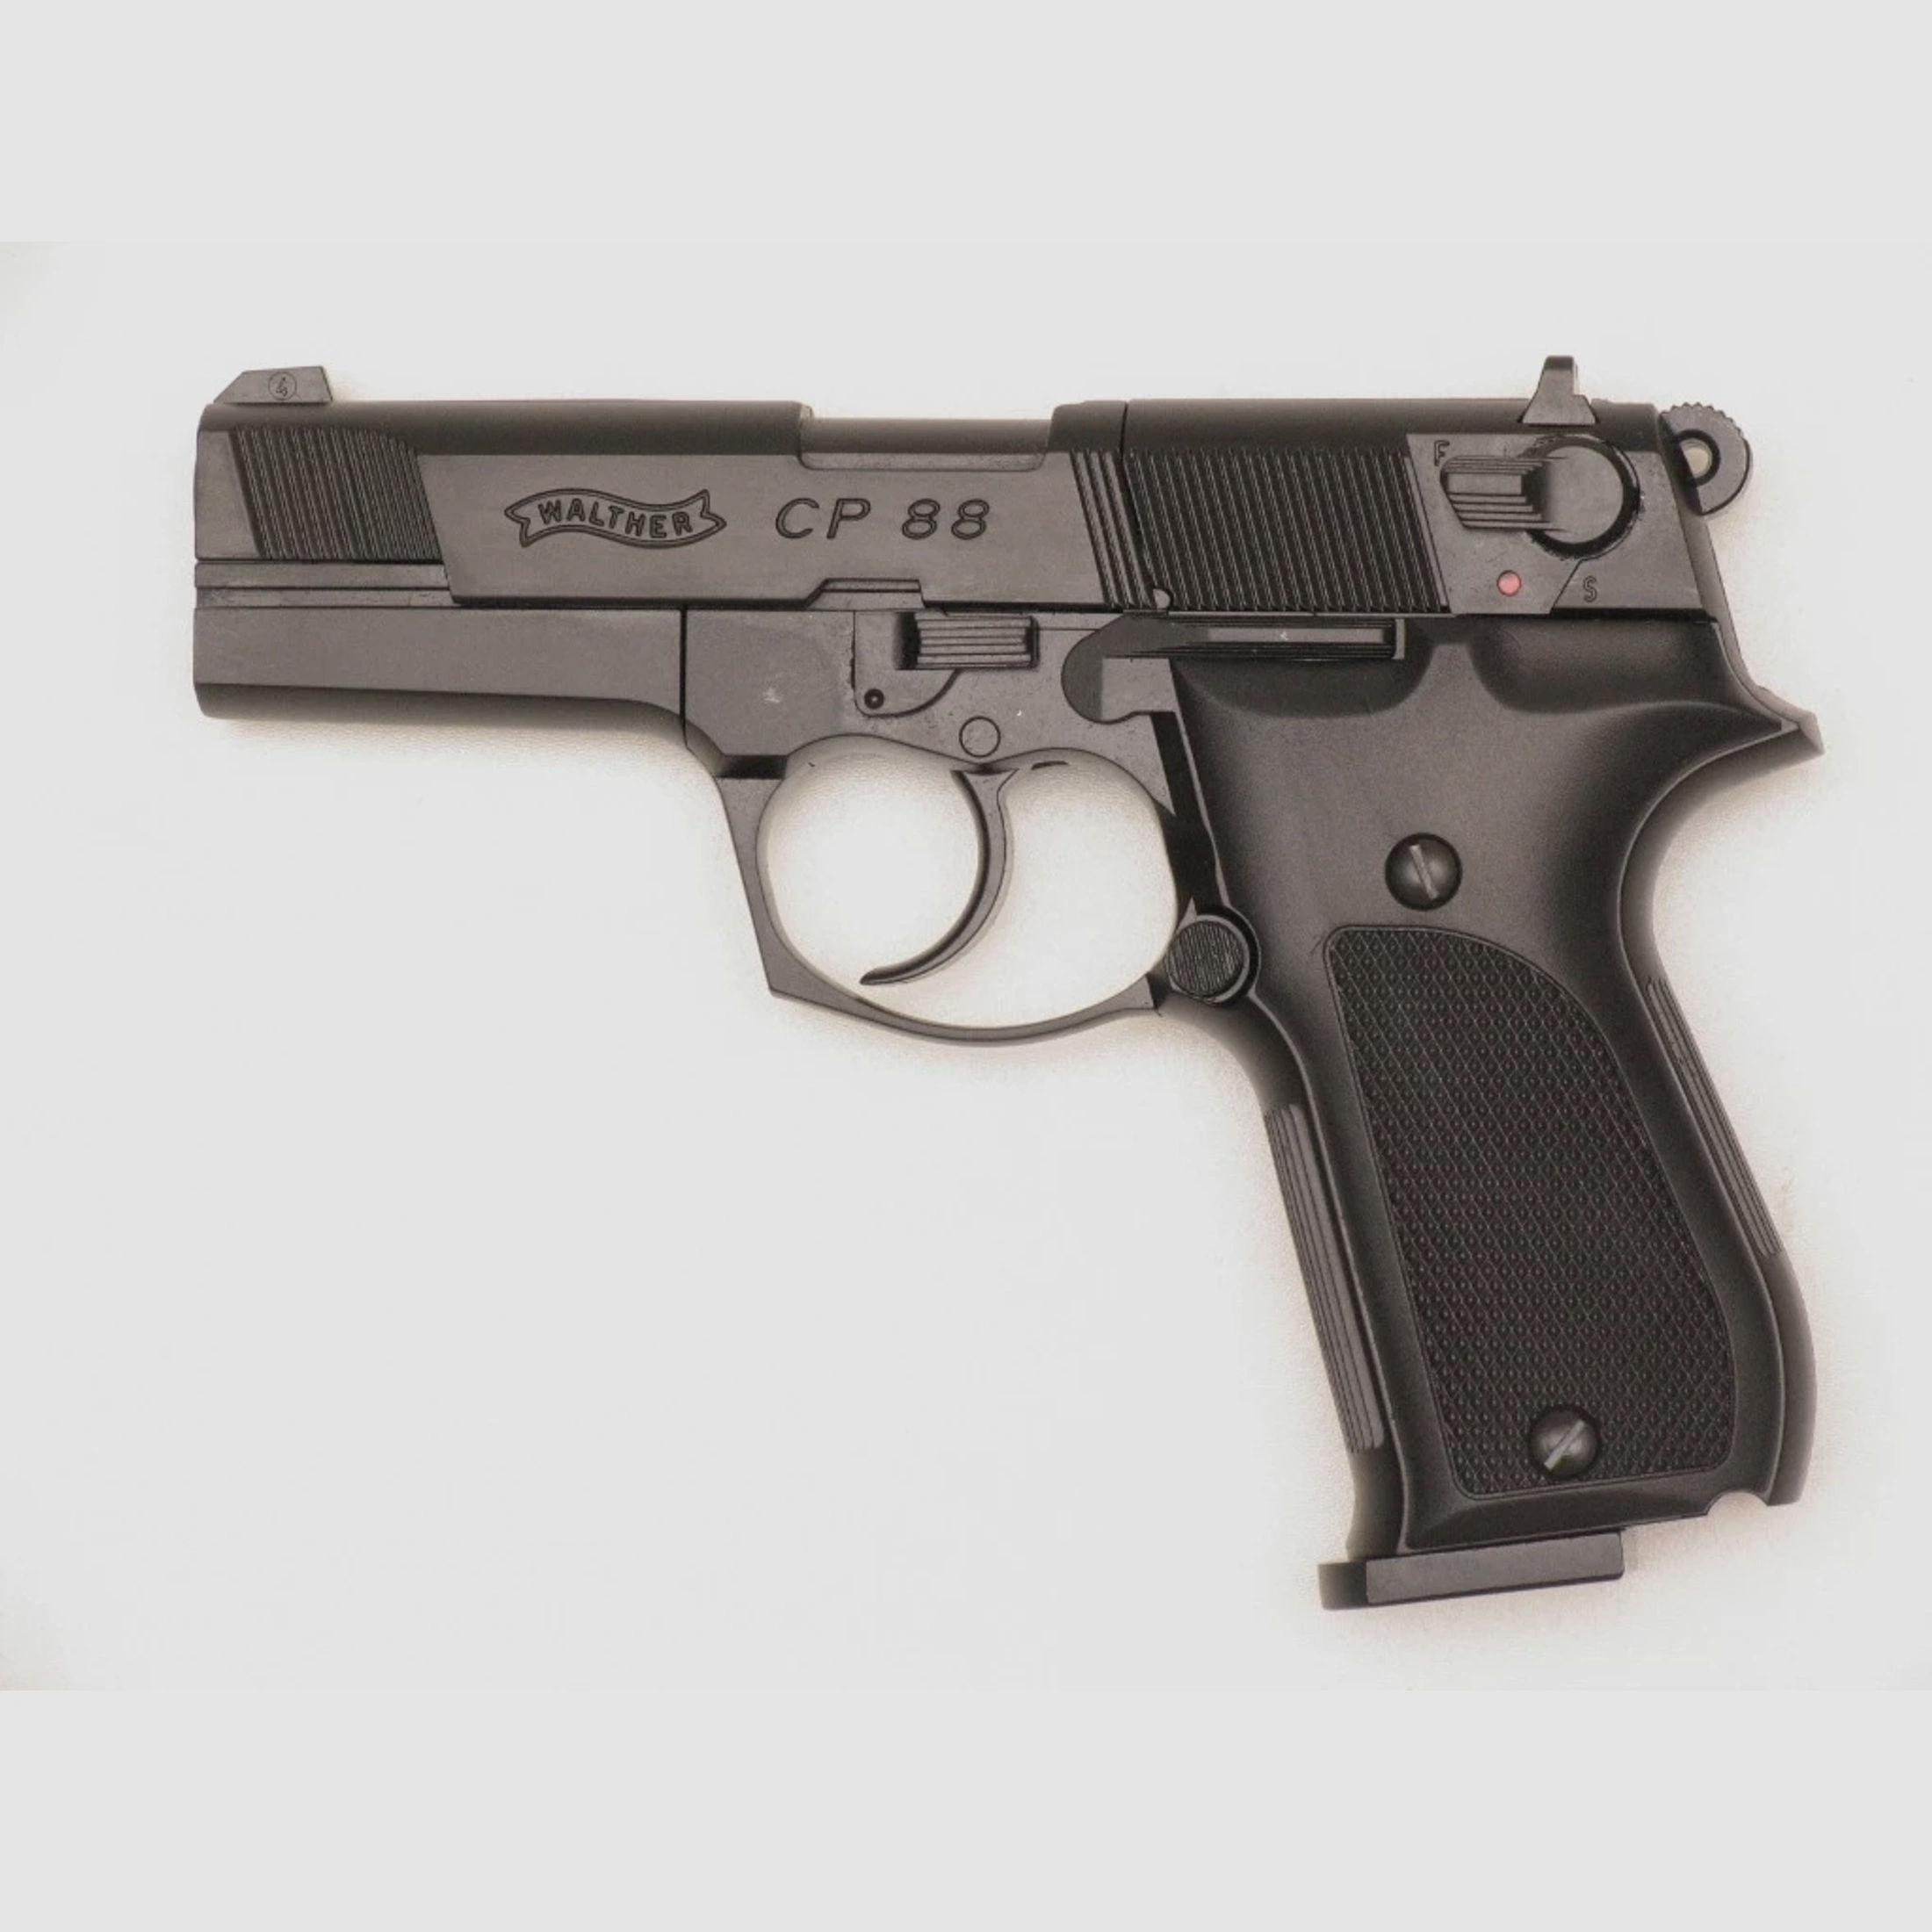 Luftpistole Walther CP88 CO2 schwarz, 4,5mm